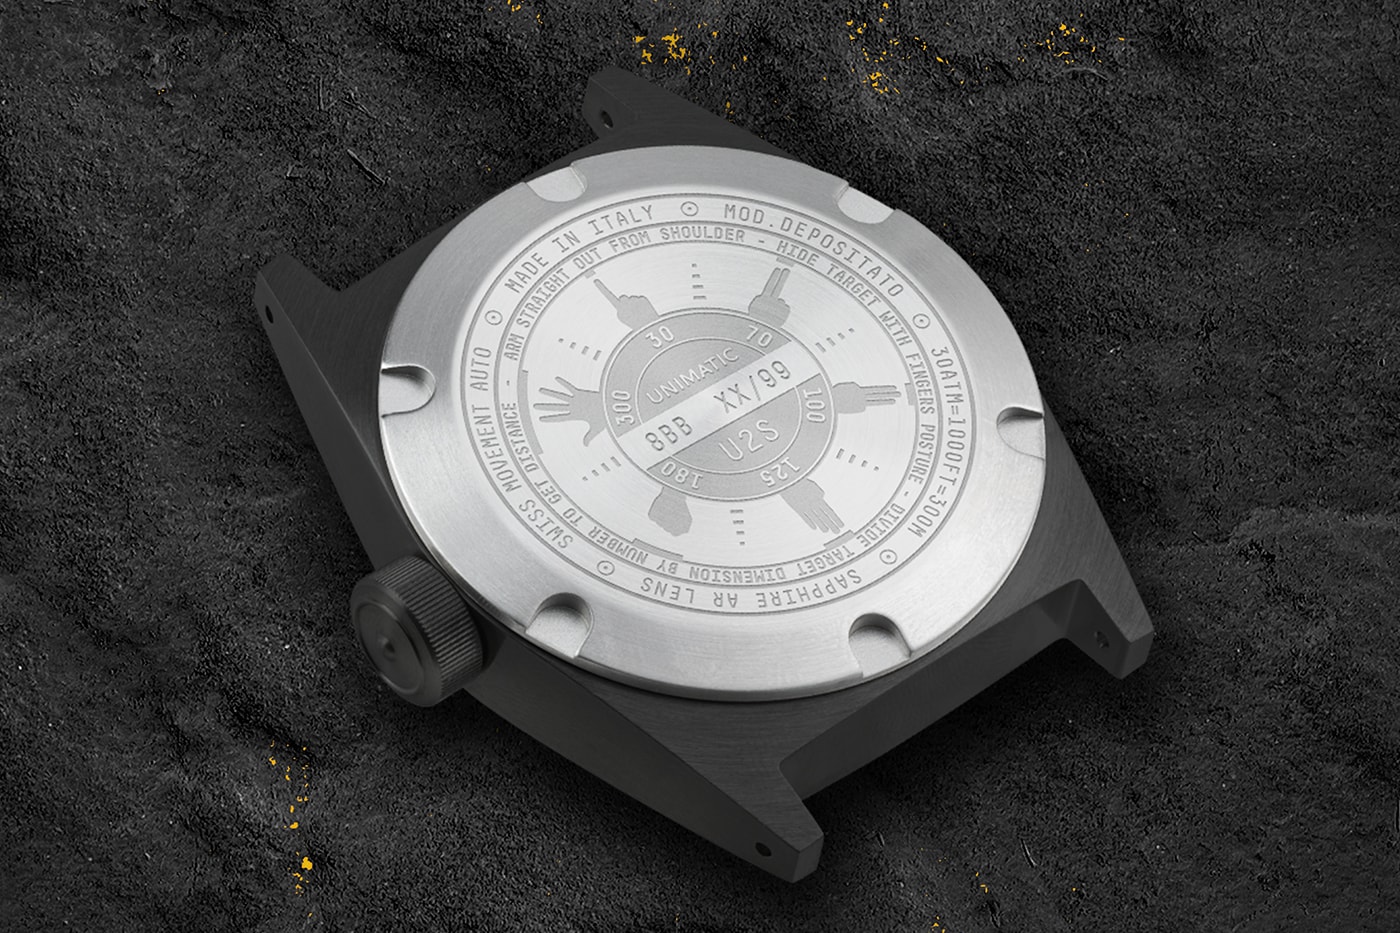 UNIMATIC Modello Uno U1S-8BB Modello Due U2S-8BB Modello Quattro U4S-8BB All Black Watches Release Info